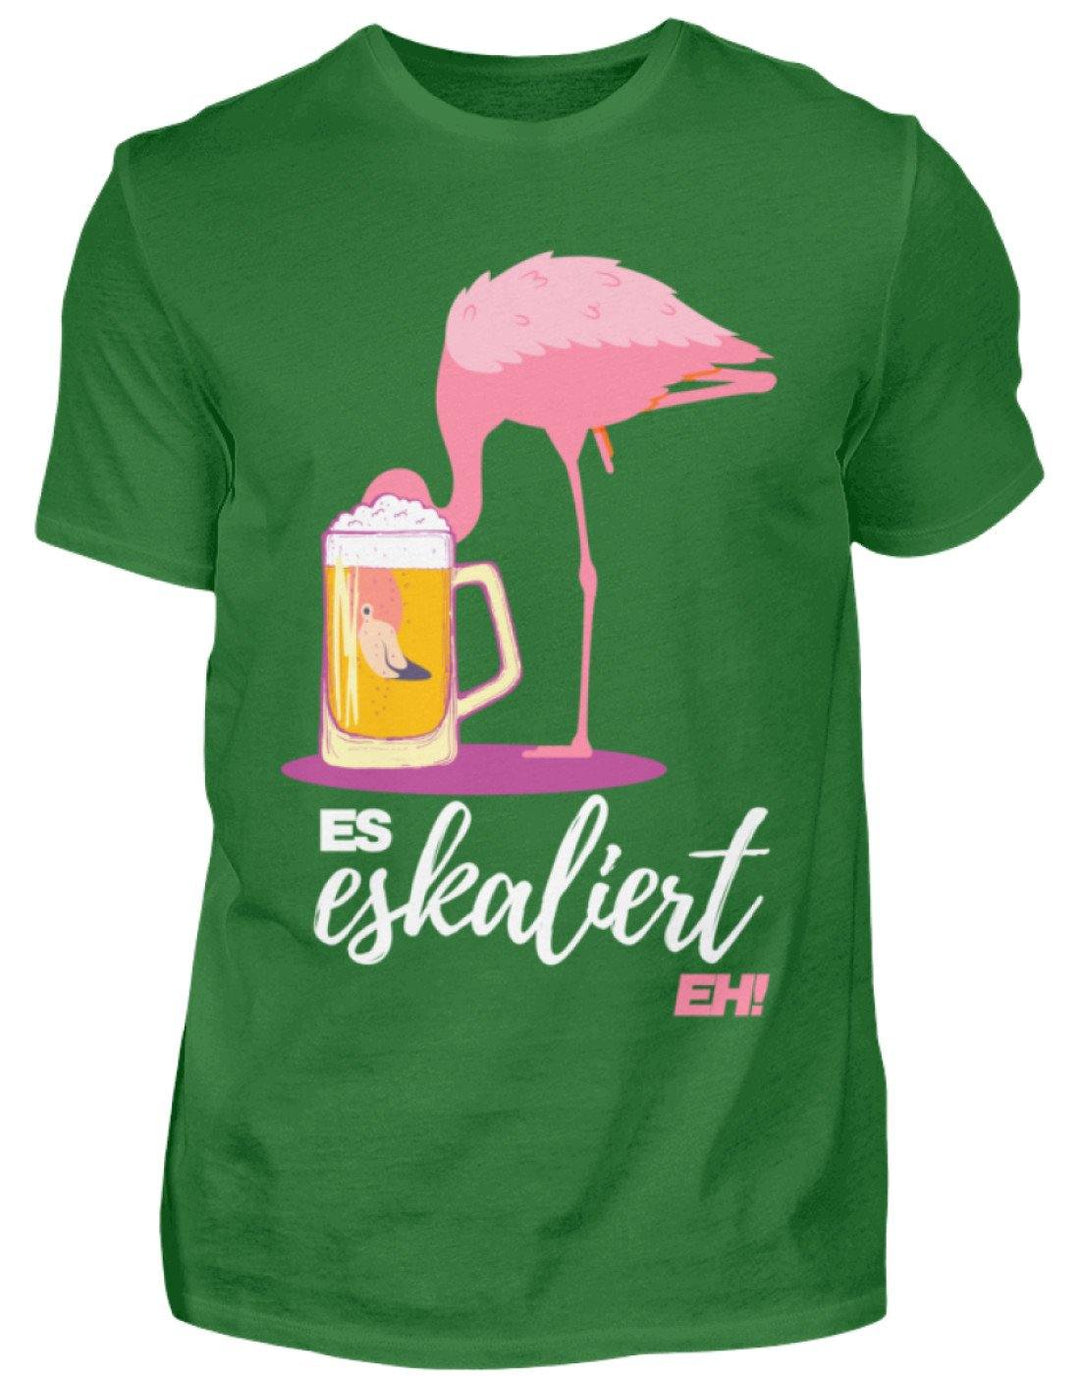 Es Eskaliert Eh - Flamingo  - Herren Shirt - Words on Shirts Sag es mit dem Mittelfinger Shirts Hoodies Sweatshirt Taschen Gymsack Spruch Sprüche Statement